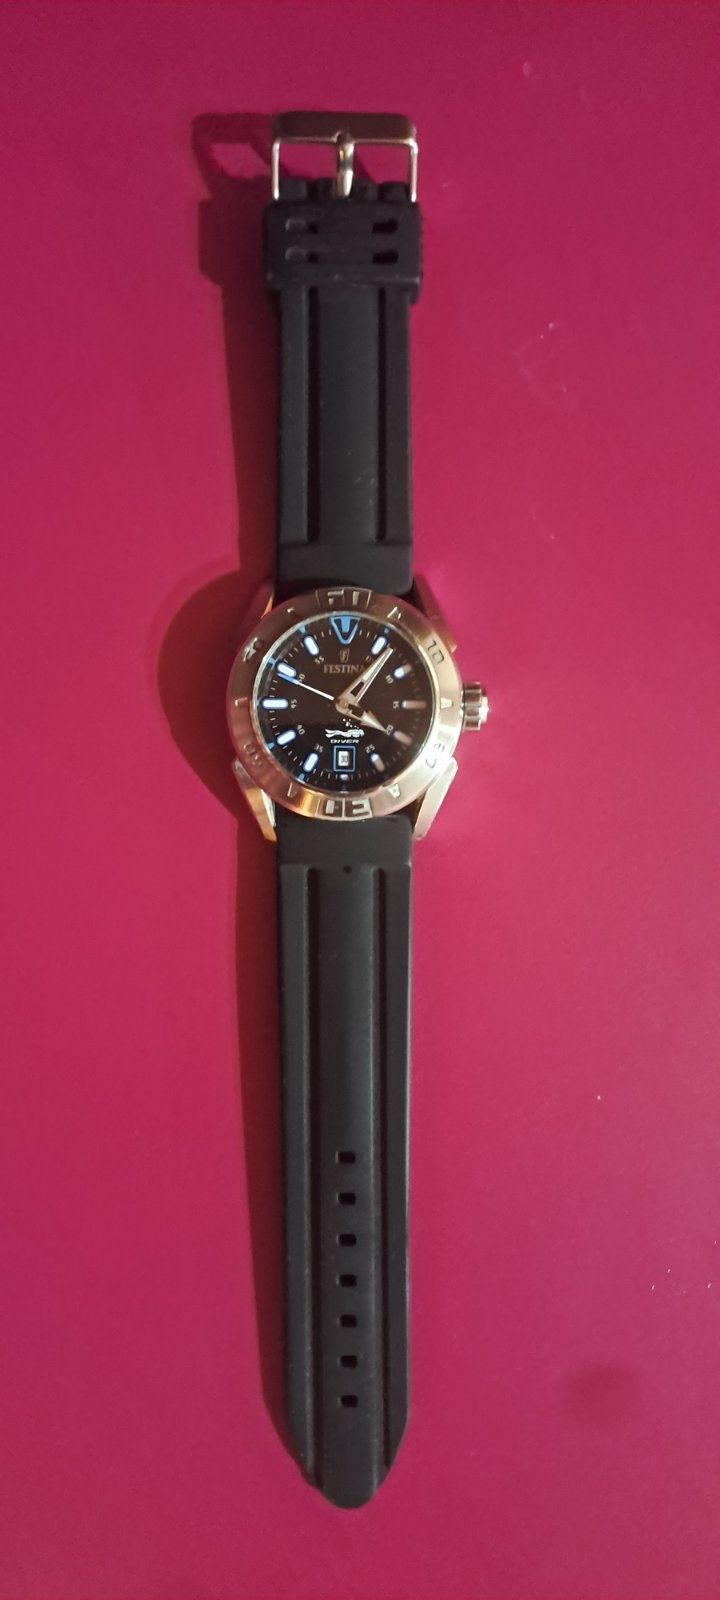 Продавам мъжки часовник Festina diver